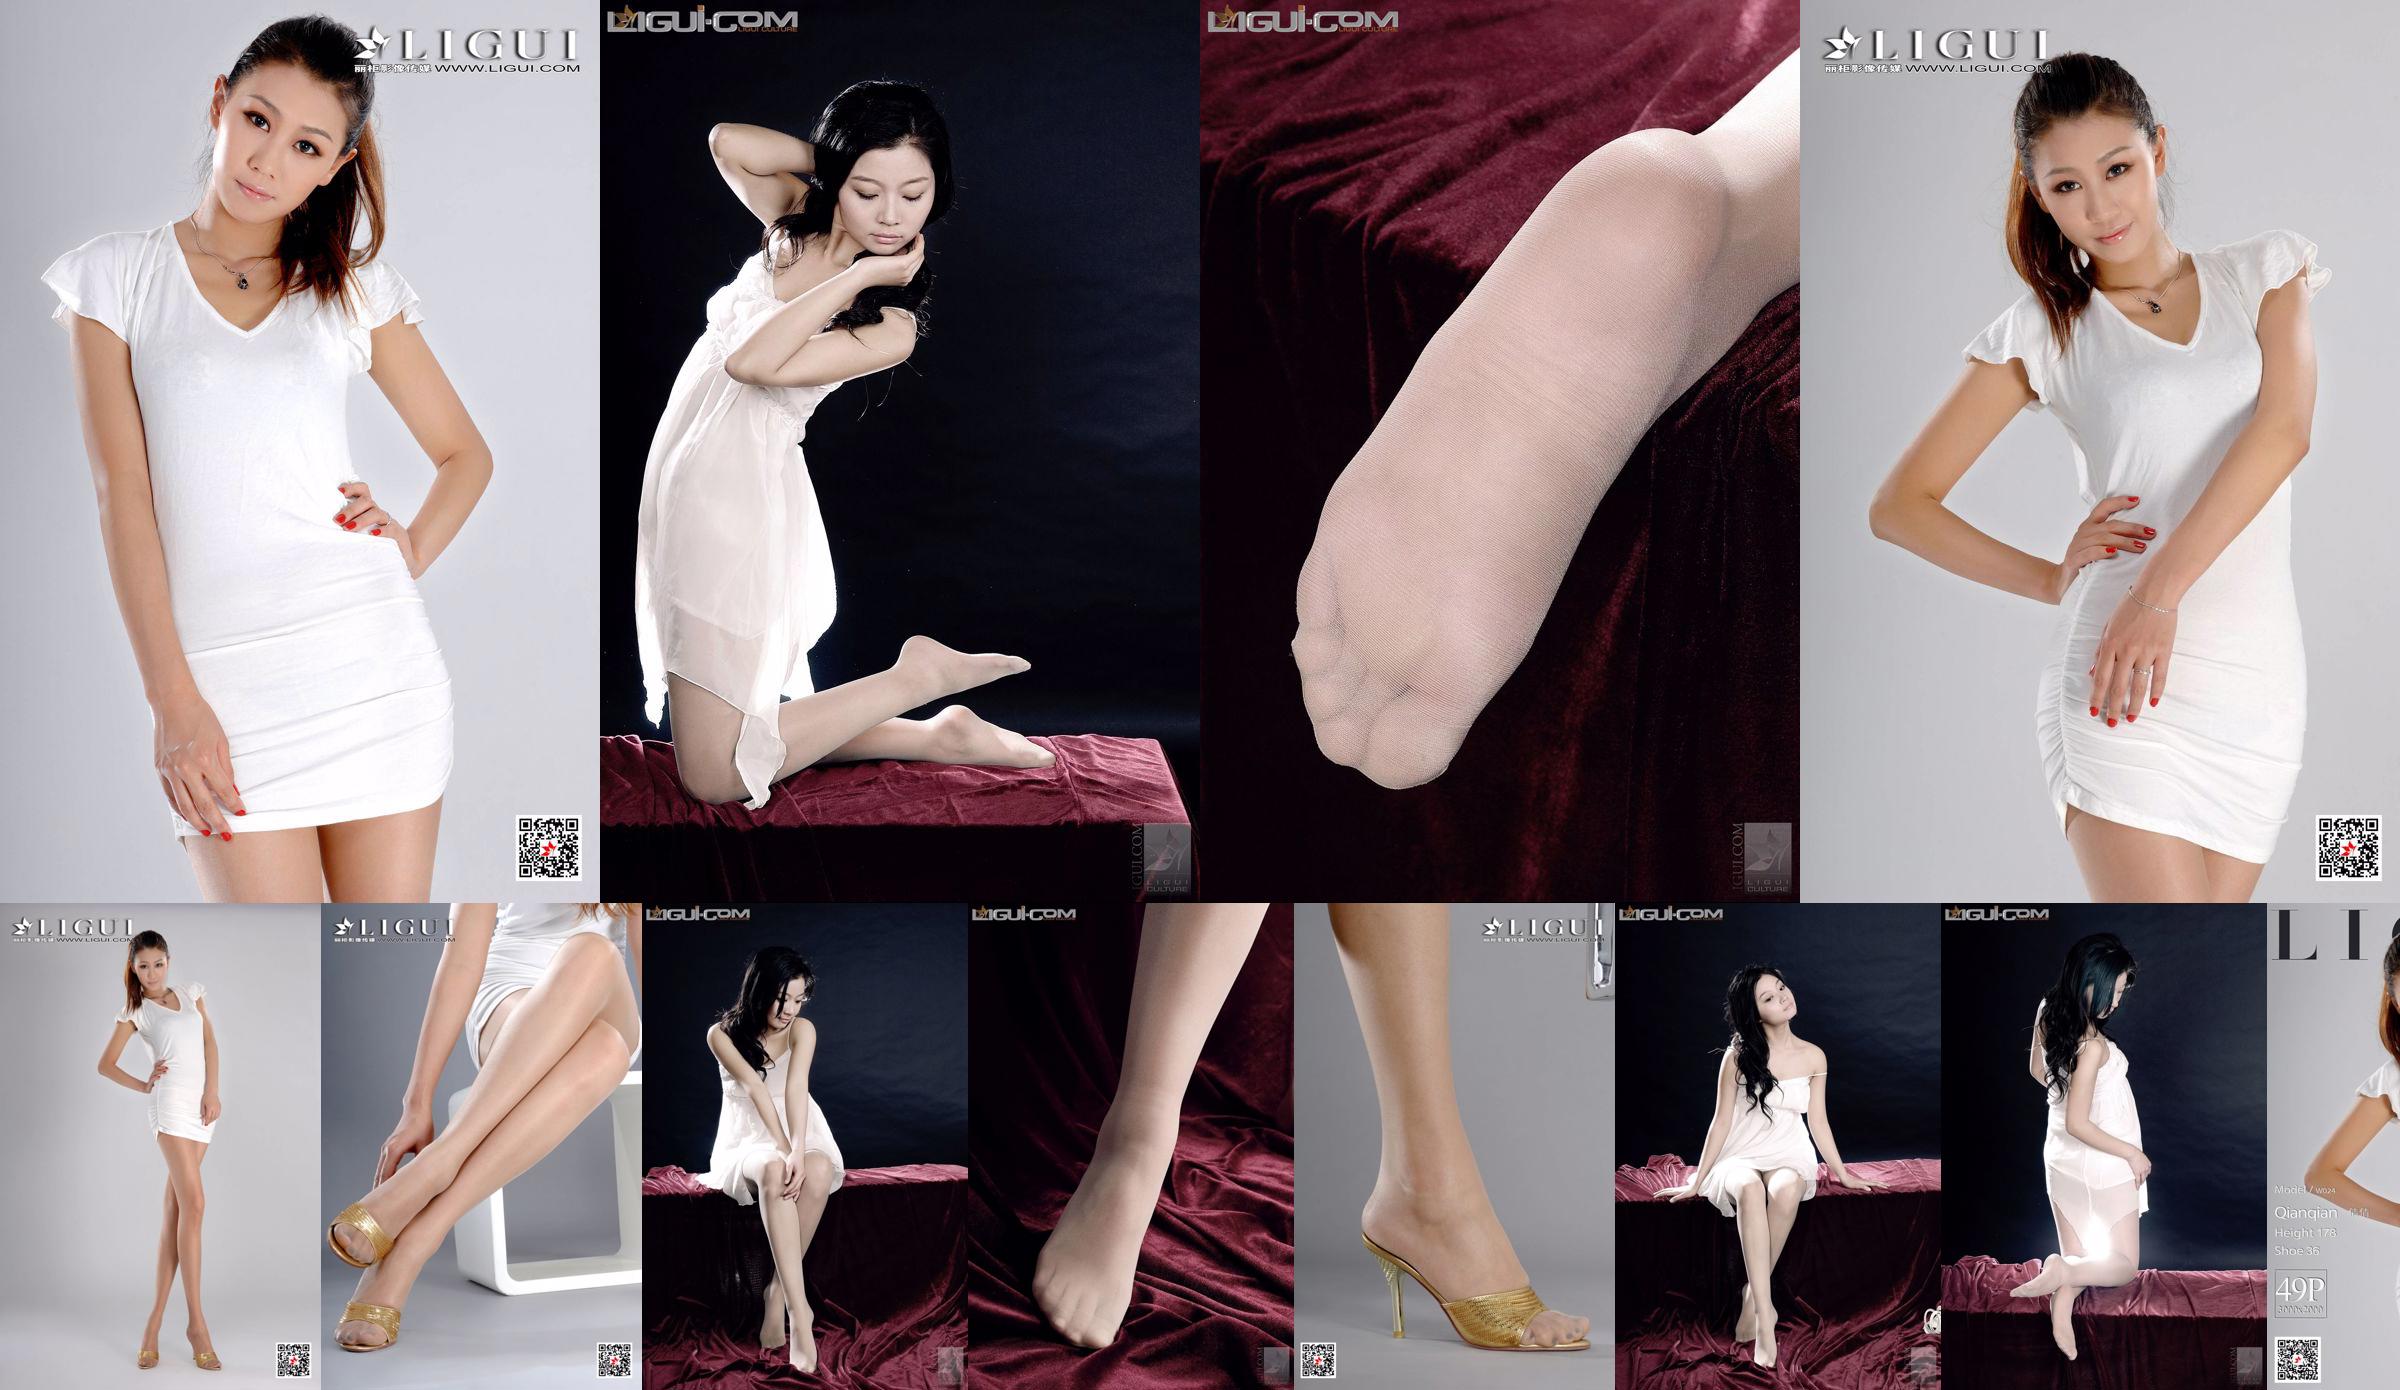 Modèle Qianqian "Fille froide et belle" [丽 柜 LiGui] Photo de pied de soie Image No.00bc87 Page 1